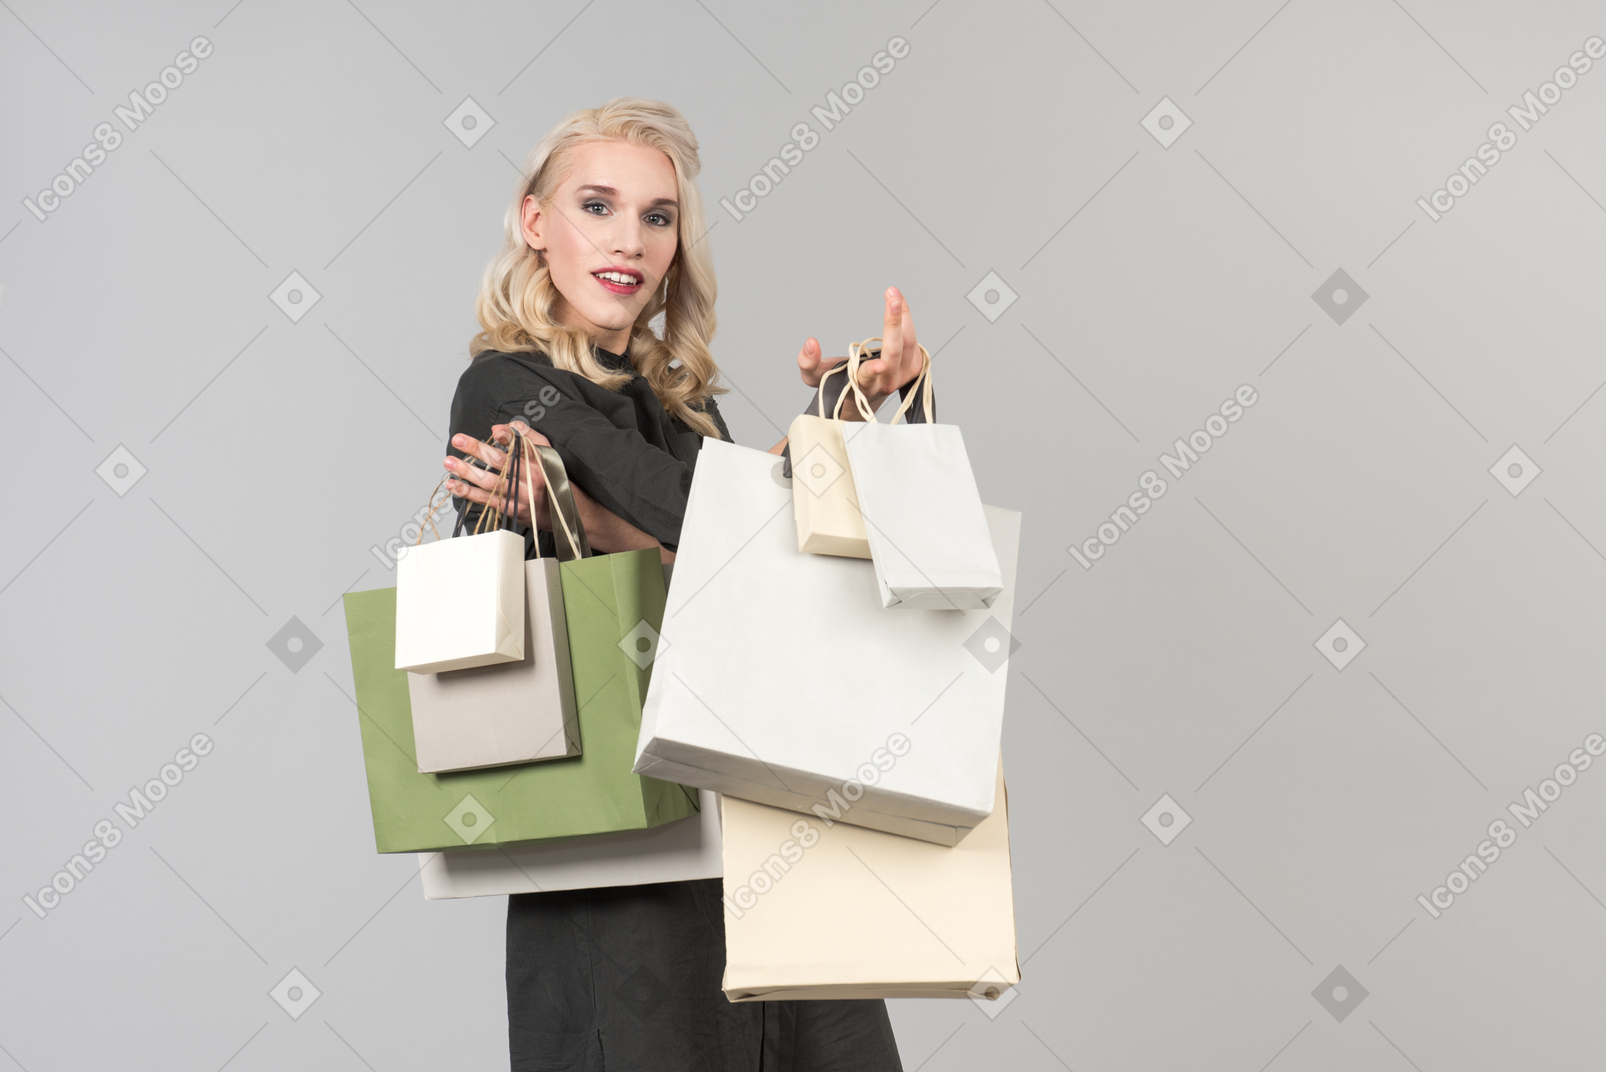 Una giovane bellissima persona dai capelli biondi in un abito nero con un mazzo di borse della spesa in entrambe le mani